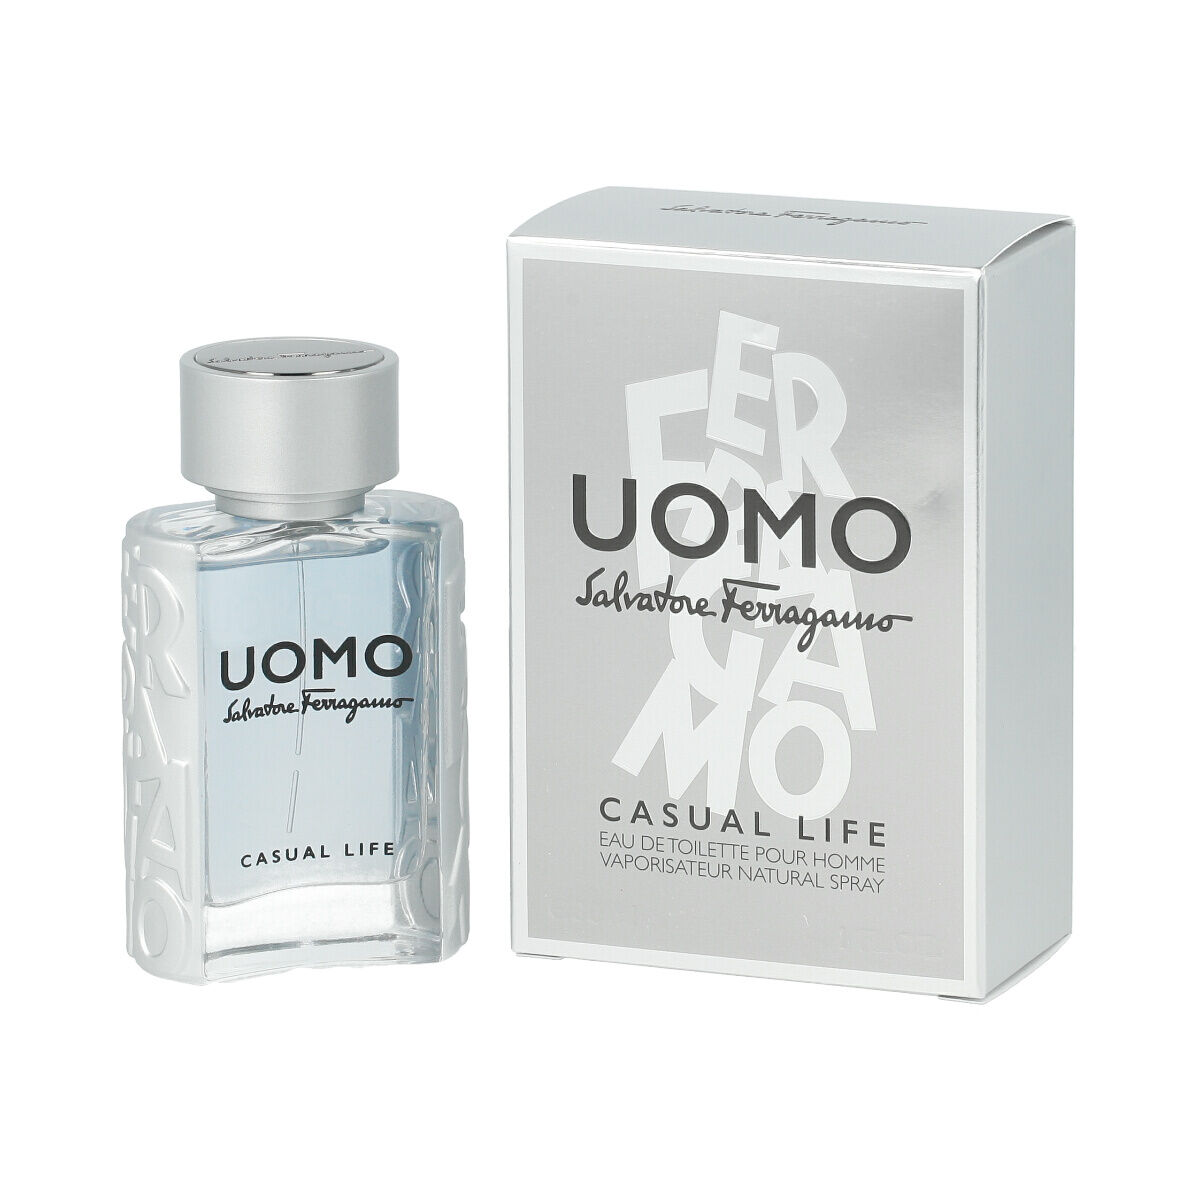 Parfum Homme Salvatore Ferragamo EDT Uomo Casual Life 30 ml